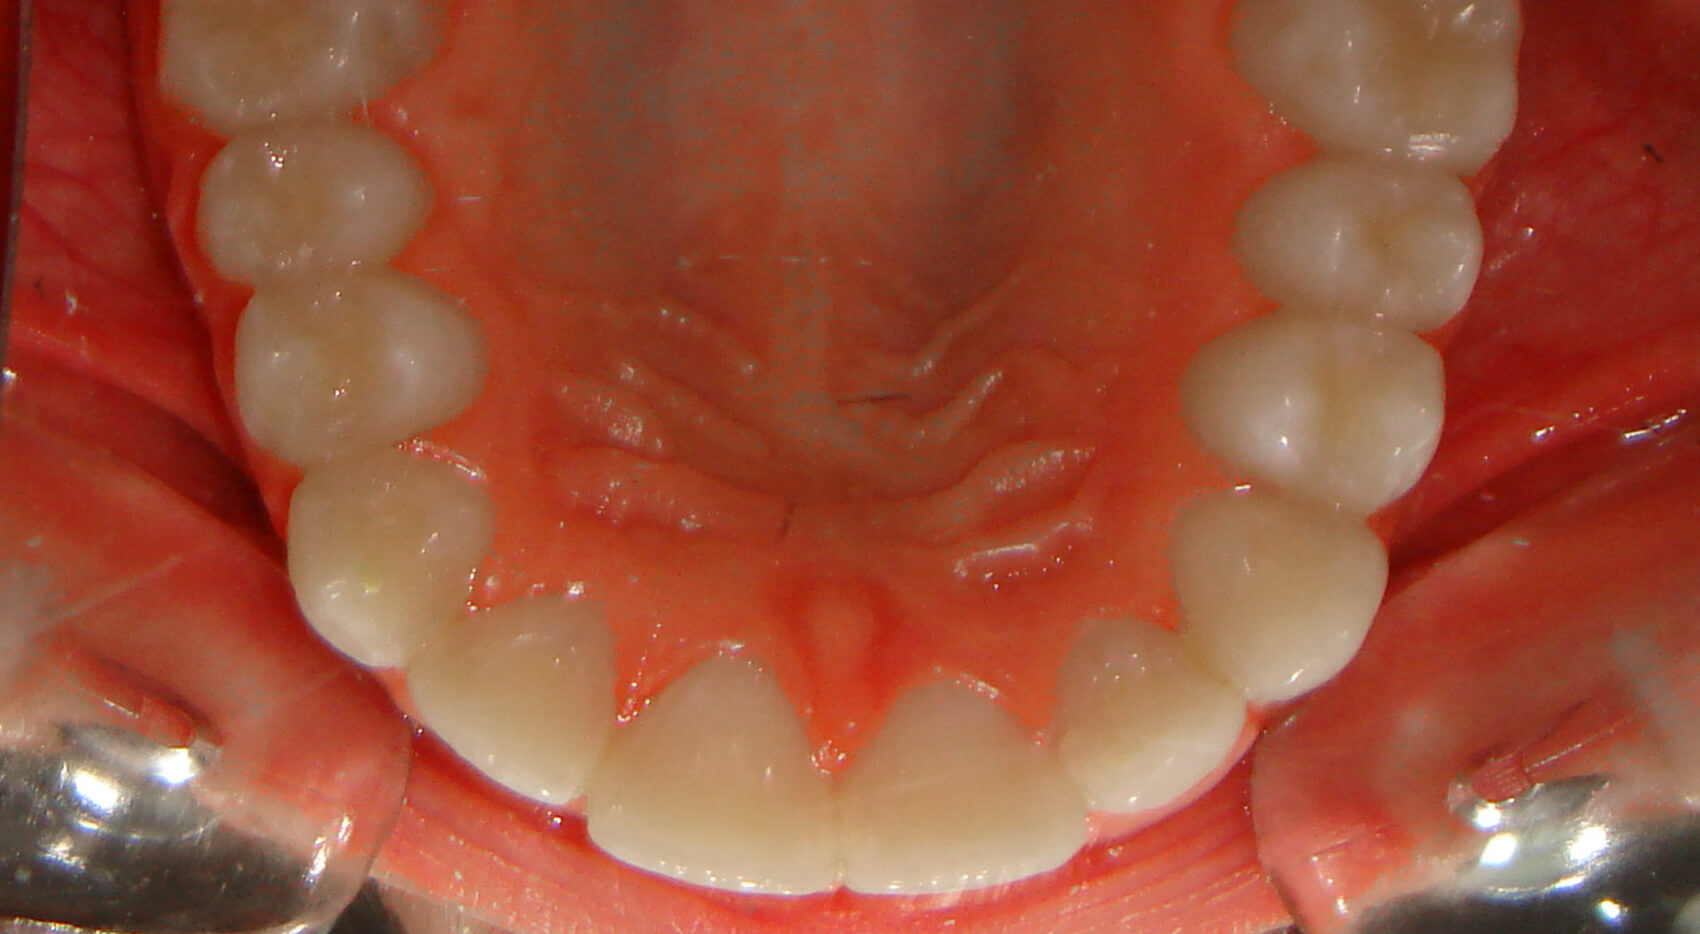 Ortodontia - Apinhamento moderado